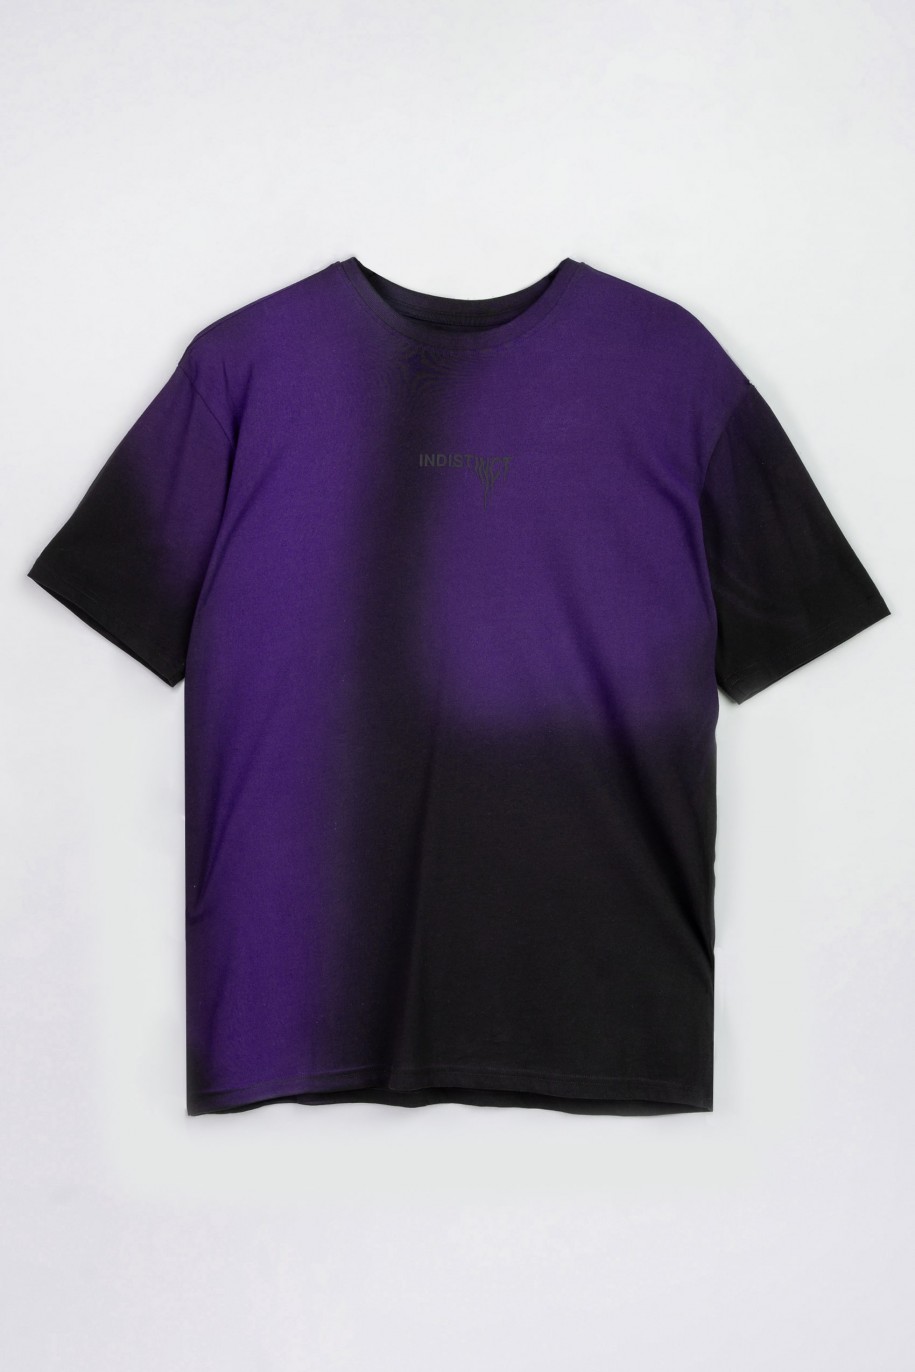 Czarny t-shirt z fioletowym nadrukiem imitującym cieniowanie - 47542